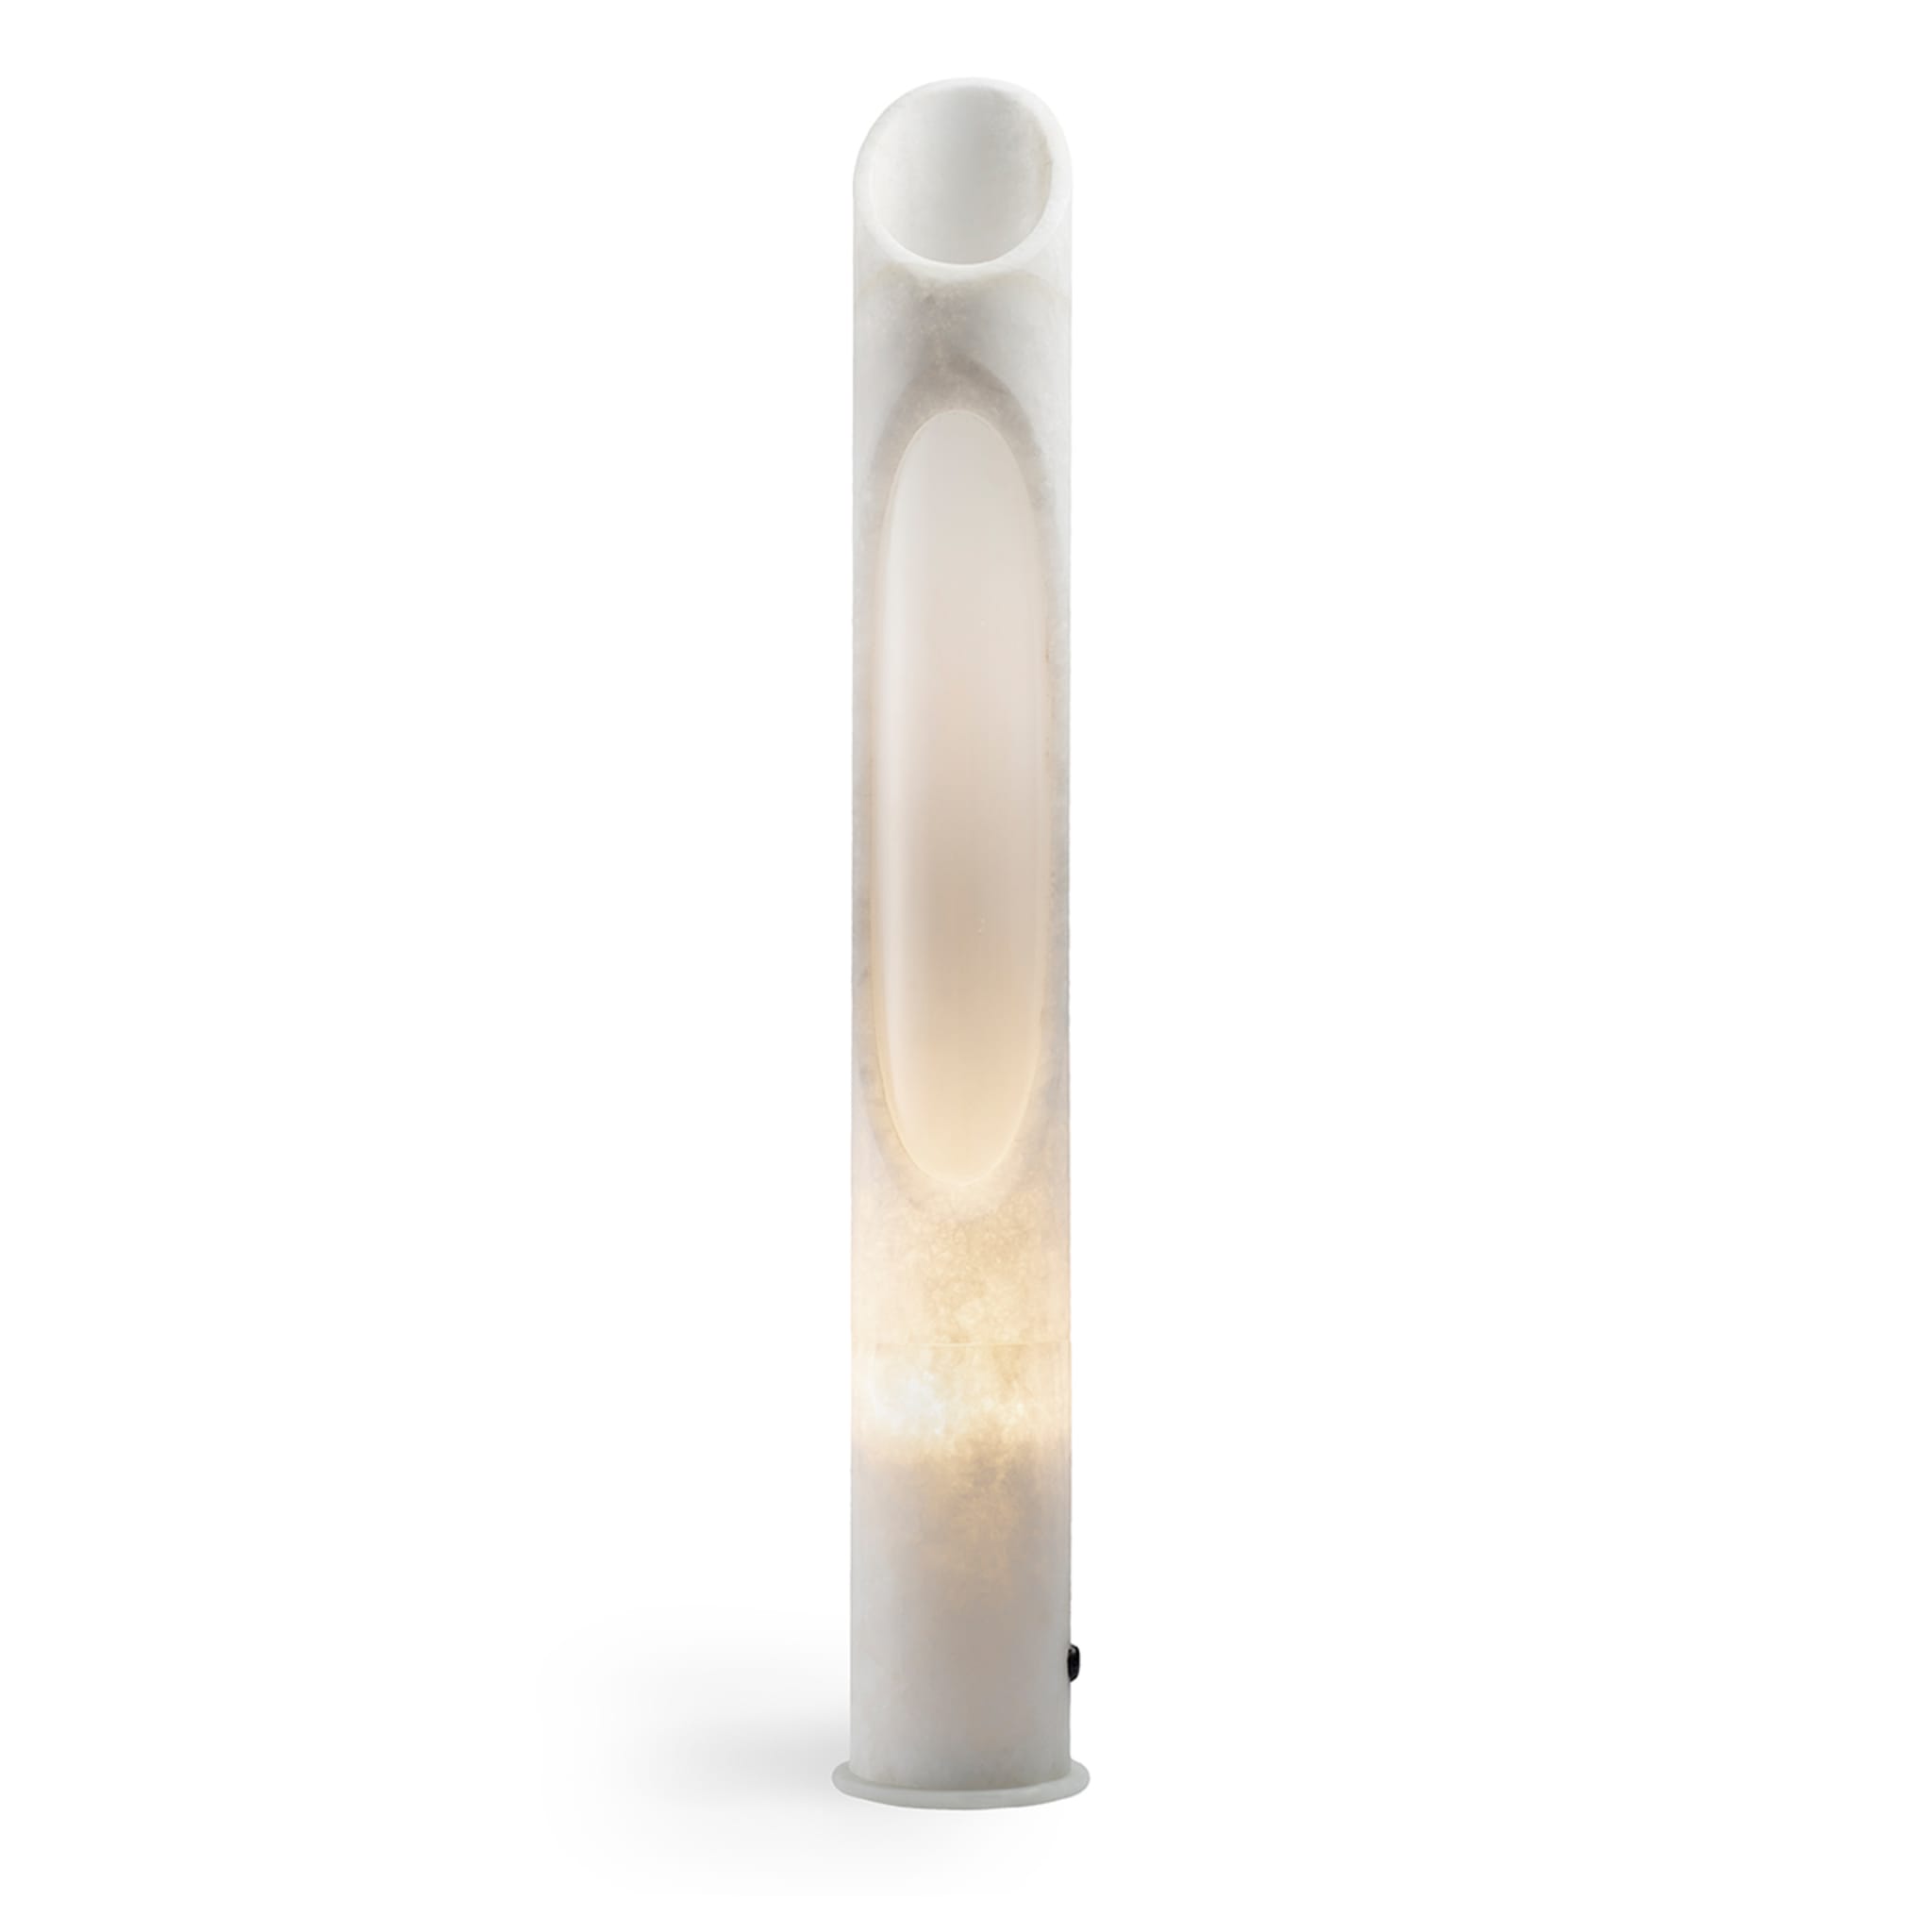  Armonia Lamp L in White Onyx marble by Jacopo Simonetti - Alternative view 1